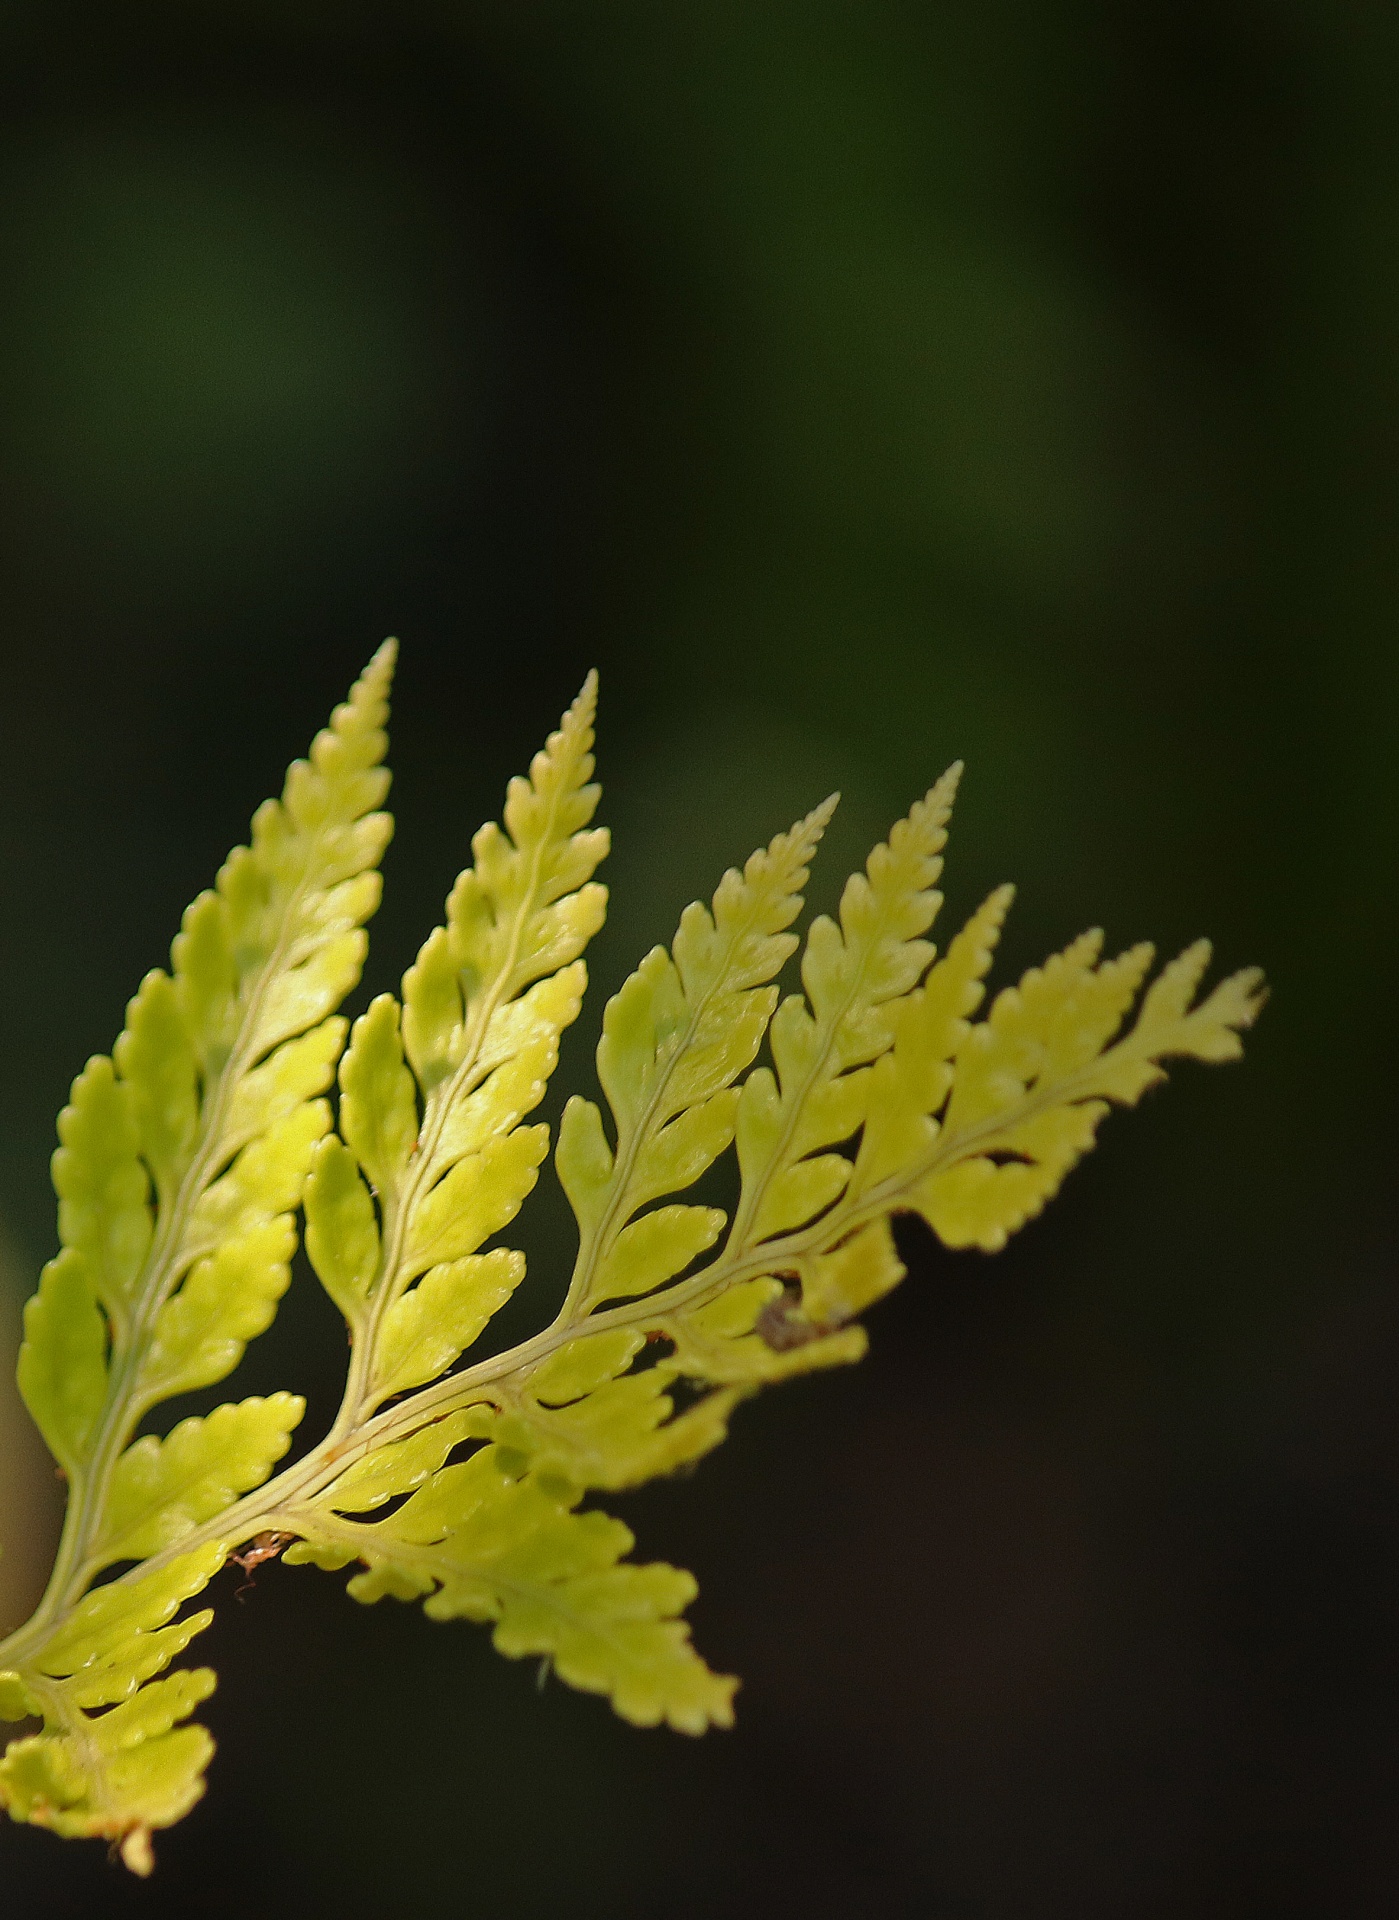 fern leaf tip free photo